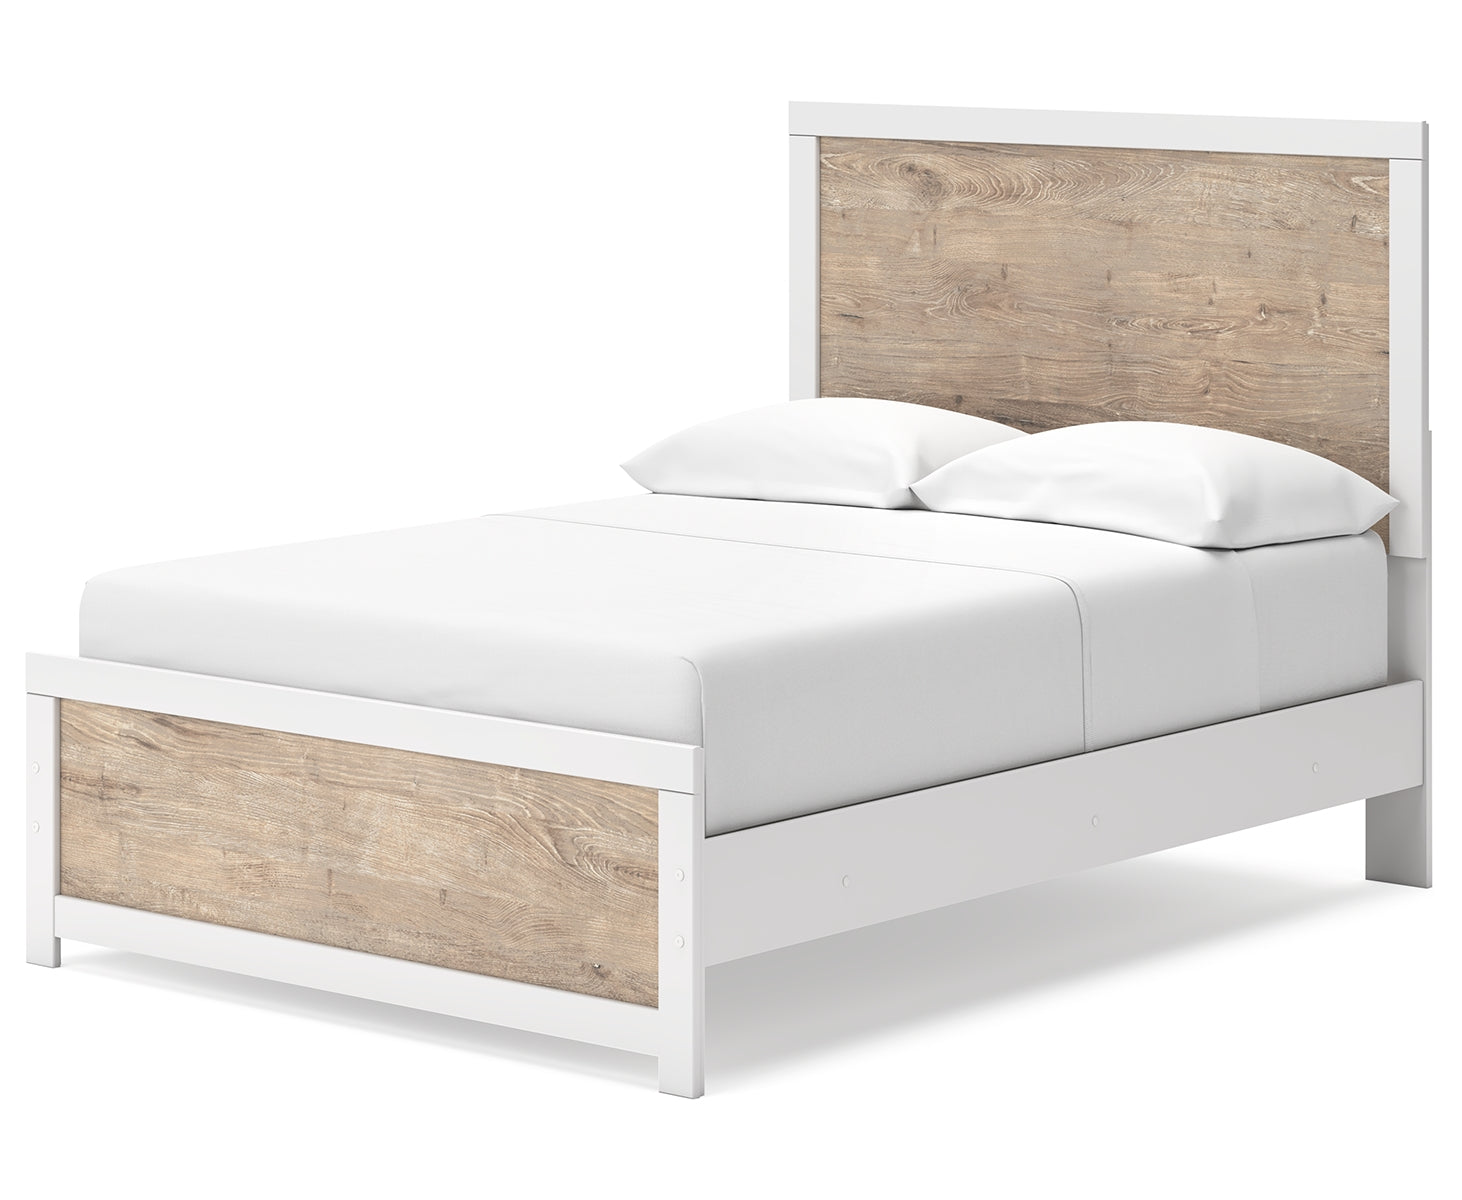 Charbitt Full Panel Bed with Dresser